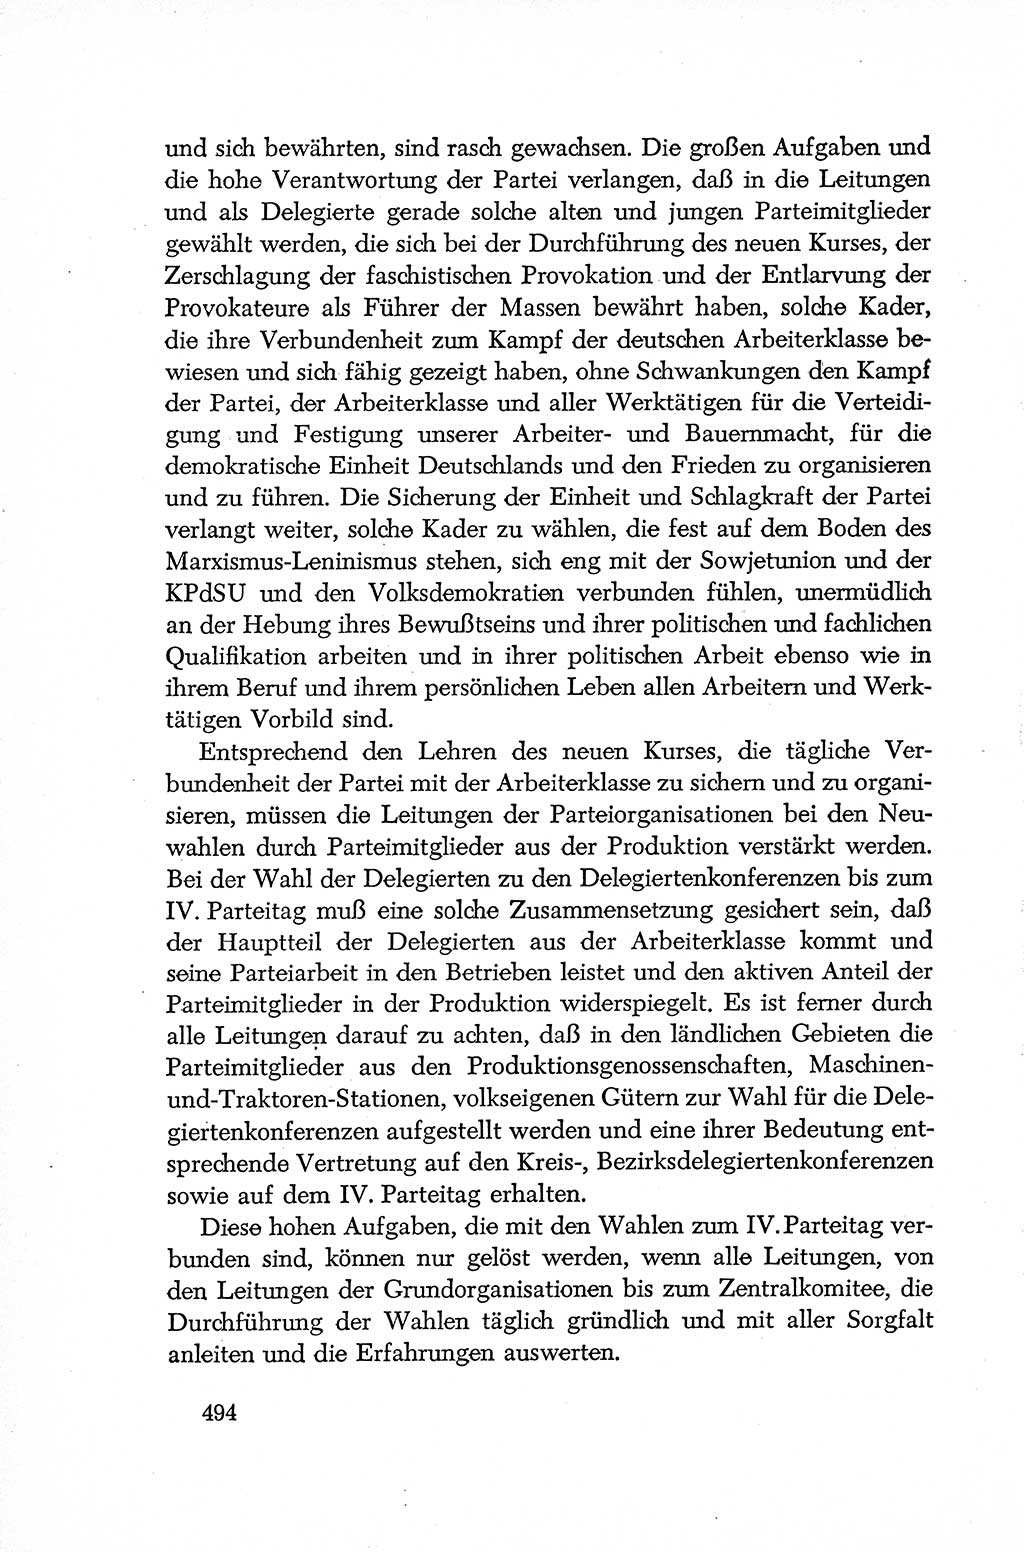 Dokumente der Sozialistischen Einheitspartei Deutschlands (SED) [Deutsche Demokratische Republik (DDR)] 1952-1953, Seite 494 (Dok. SED DDR 1952-1953, S. 494)